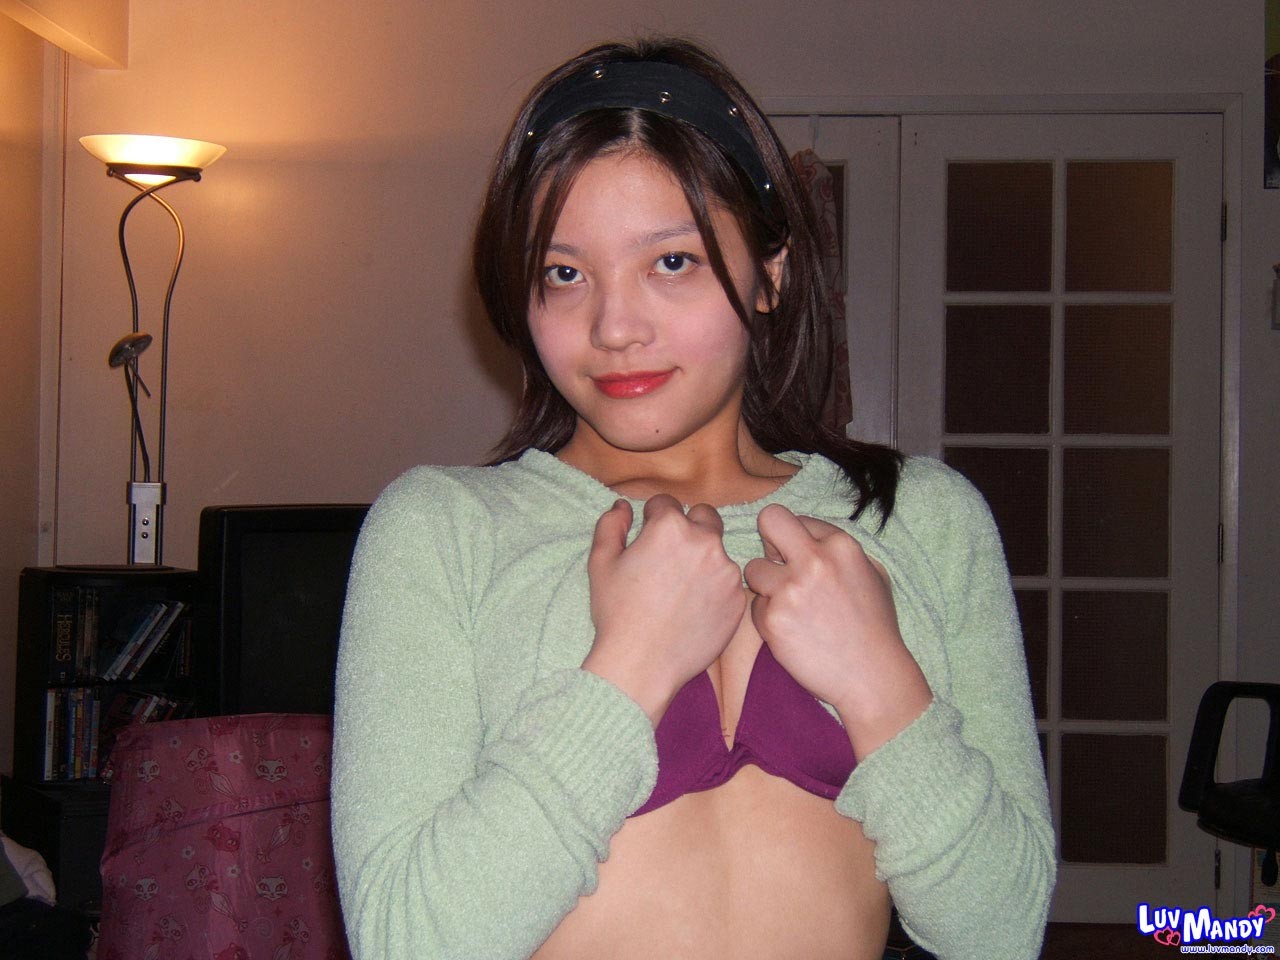 Cute asian girl next door Mandy candids #69965091